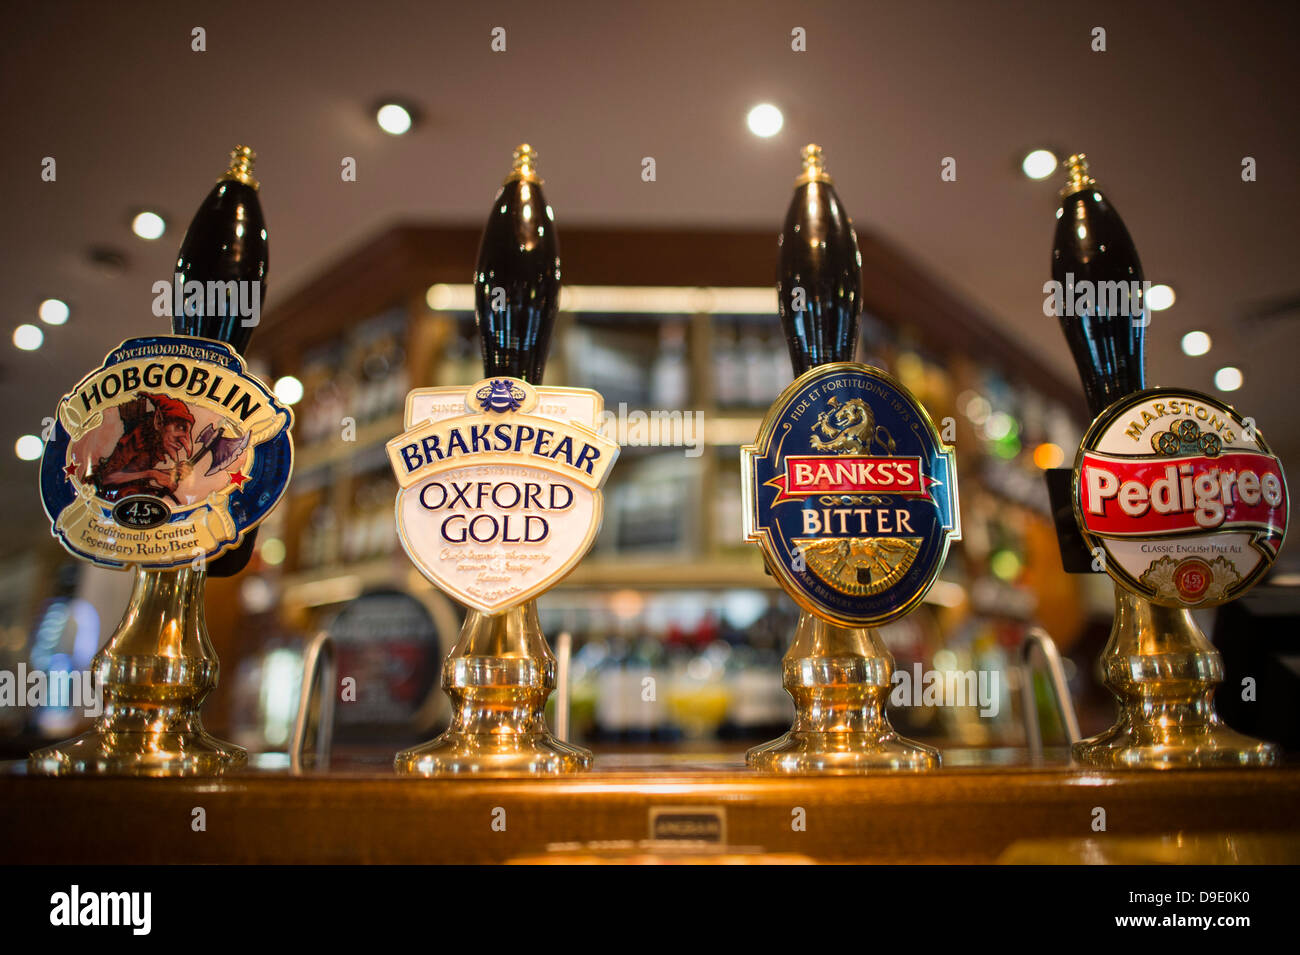 Vier Biersorten vom Fass Bier in einer Kneipe Bar, UK Brakspear Oxford Gold, Banken; s, Marstons, Stockfoto